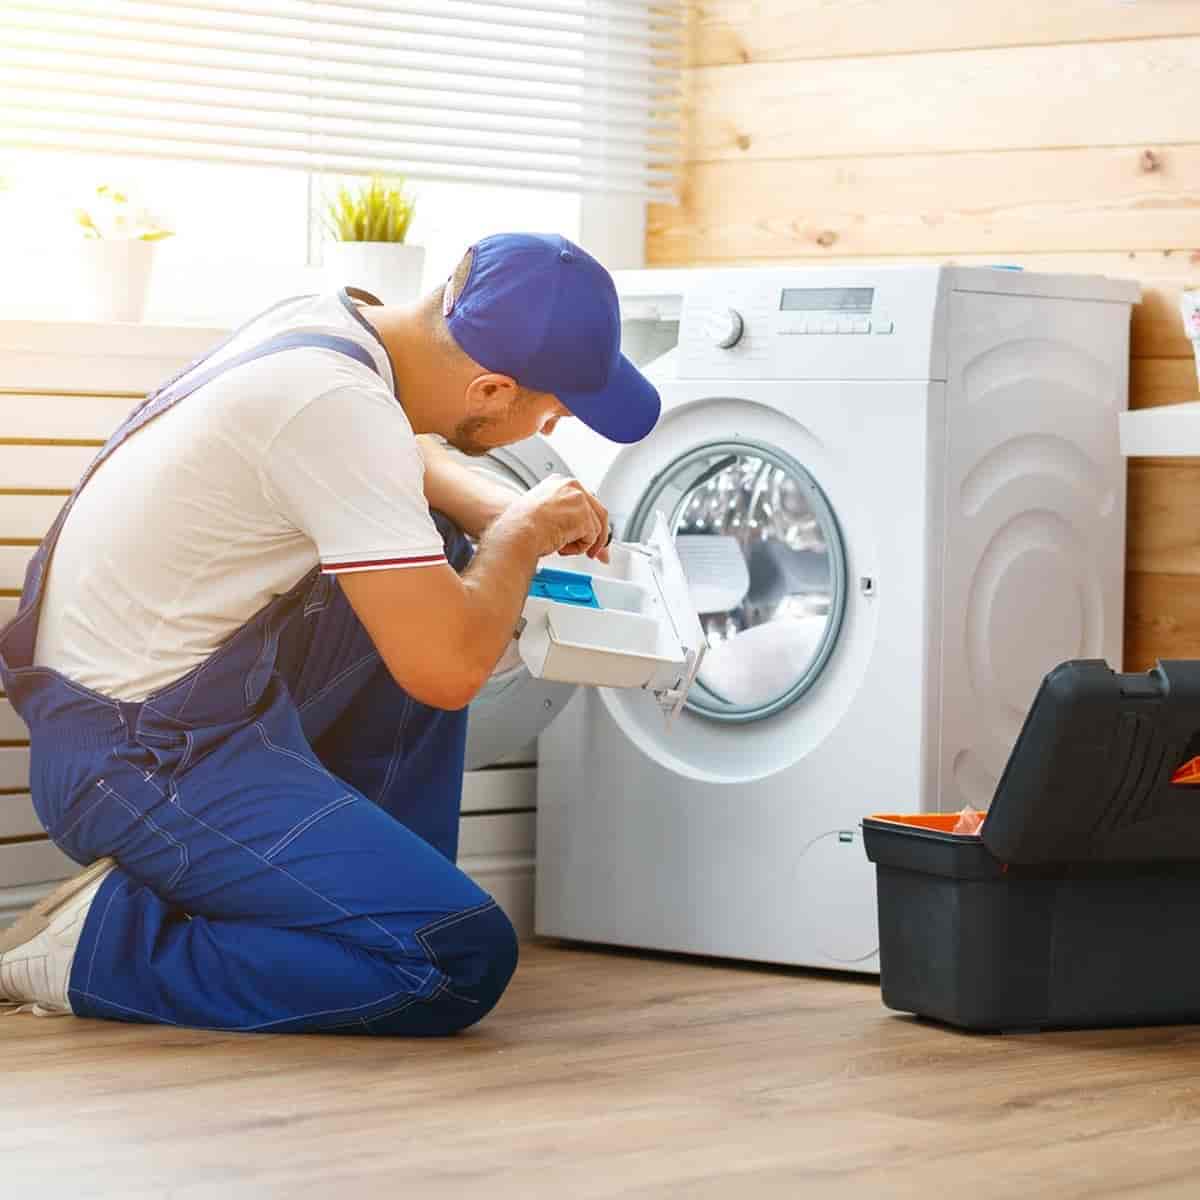 whirlpool-washing-machine-repair-service-min